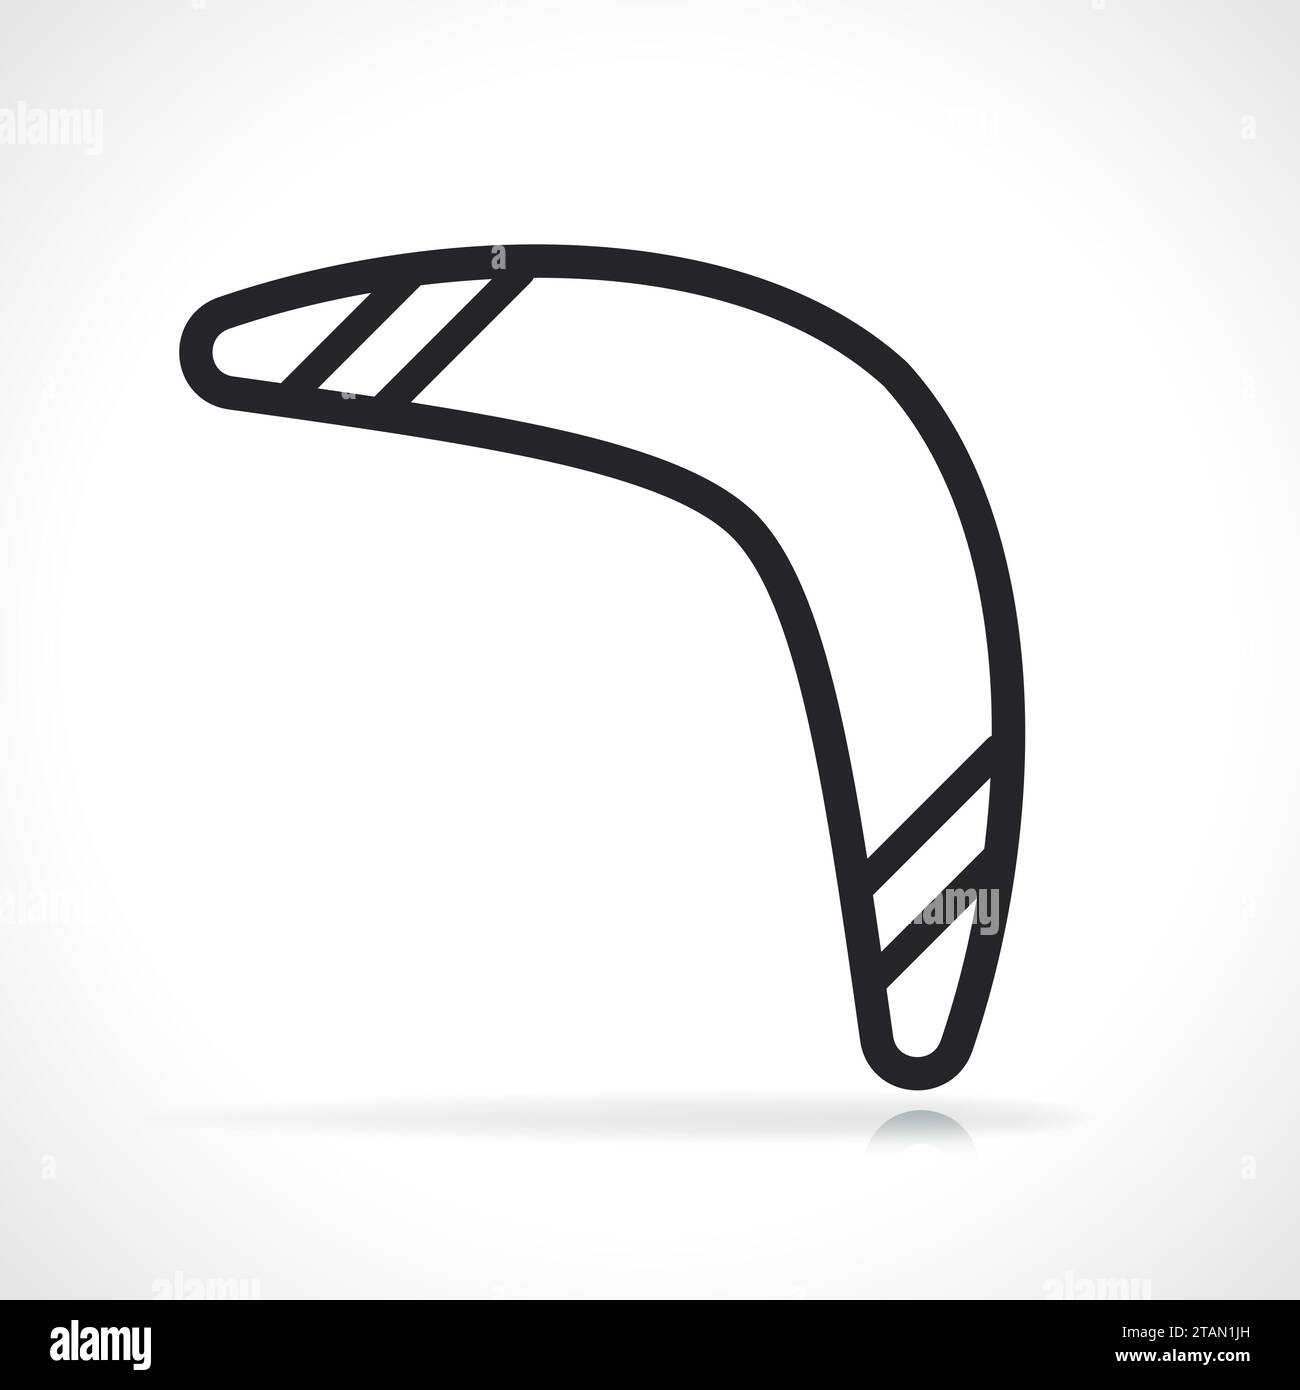 Immagine dell'icona boomerang con linea nera isolata Illustrazione Vettoriale